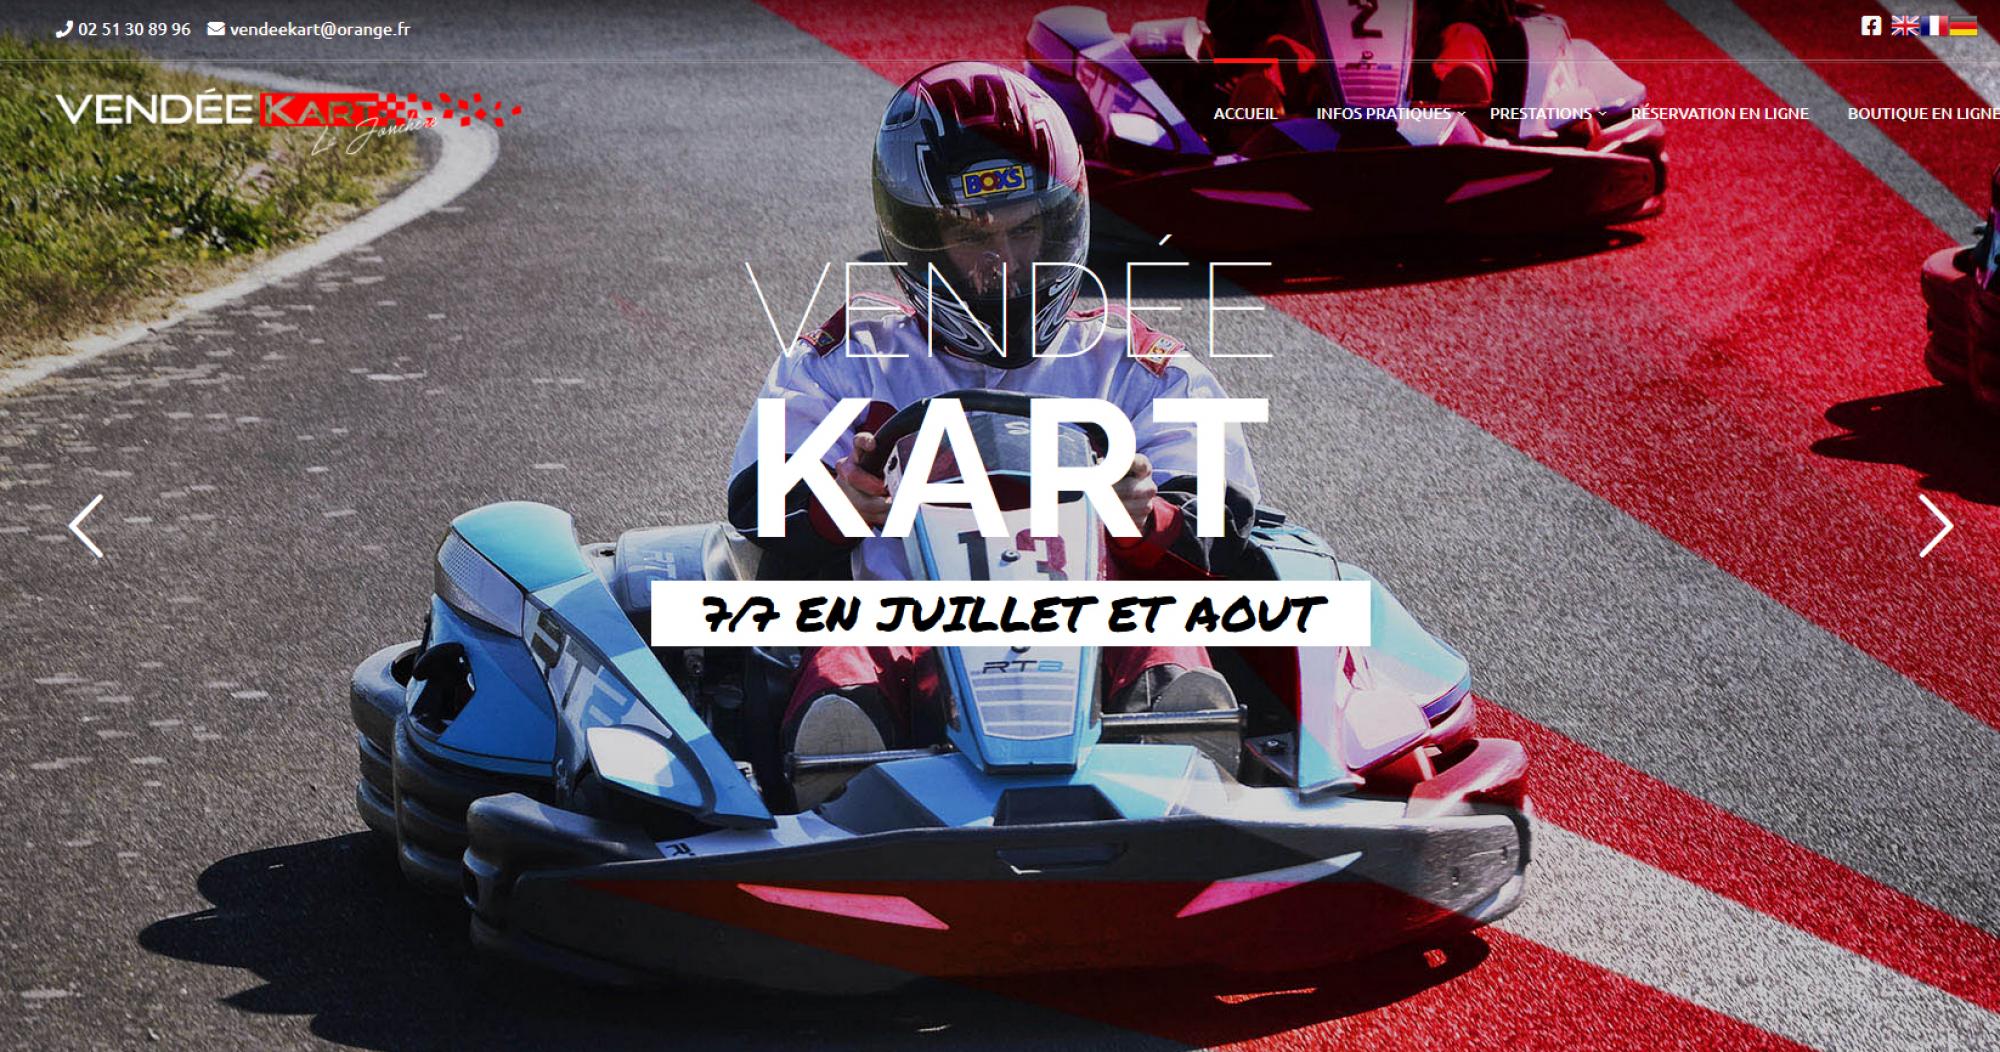 Vendée Kart circuit